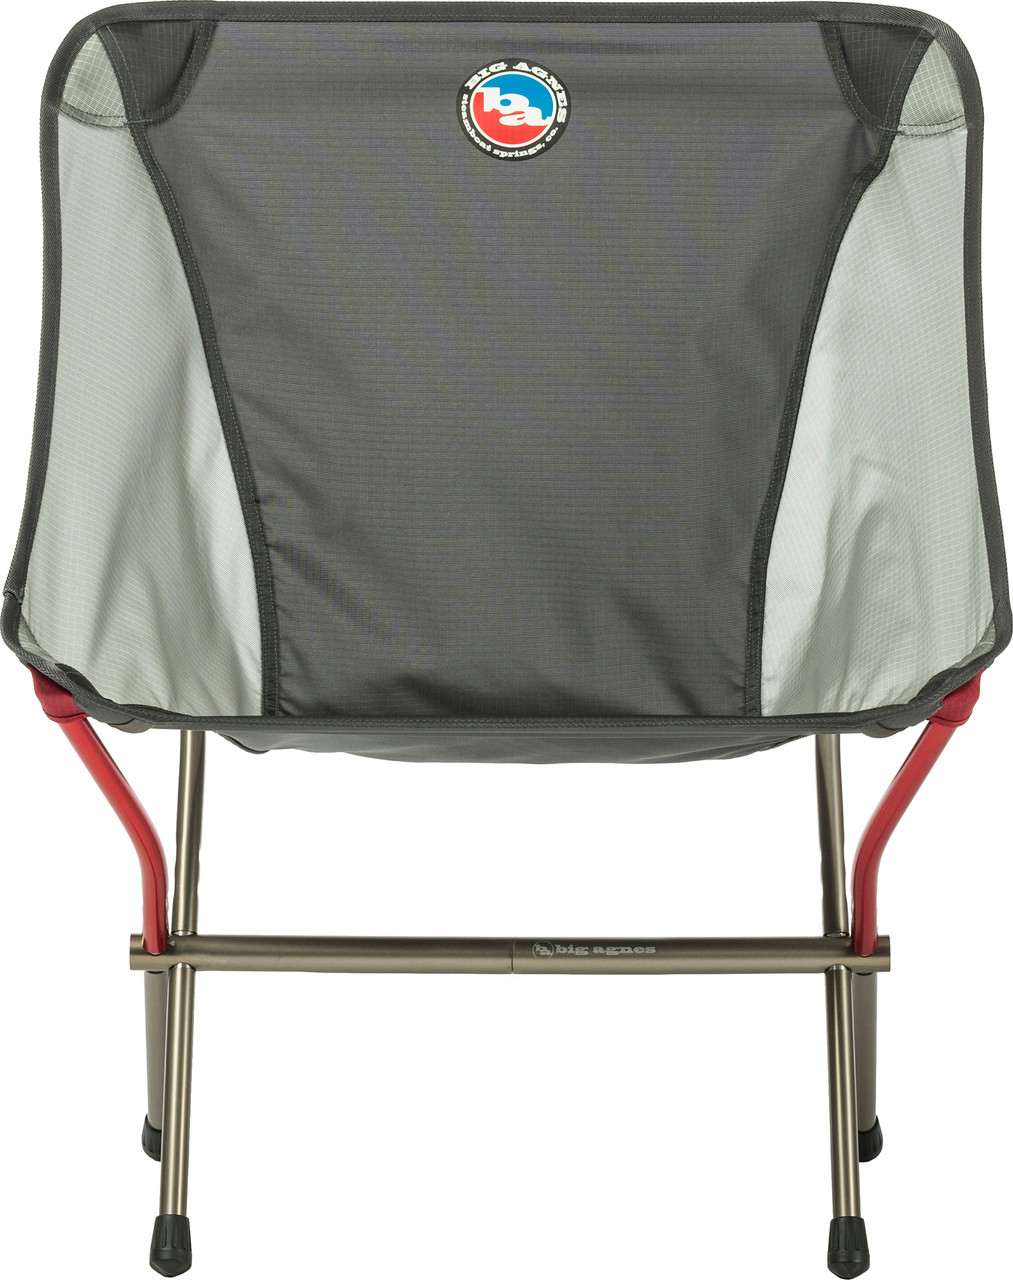 Mica Basin Camp Chair Asphalt/Gray